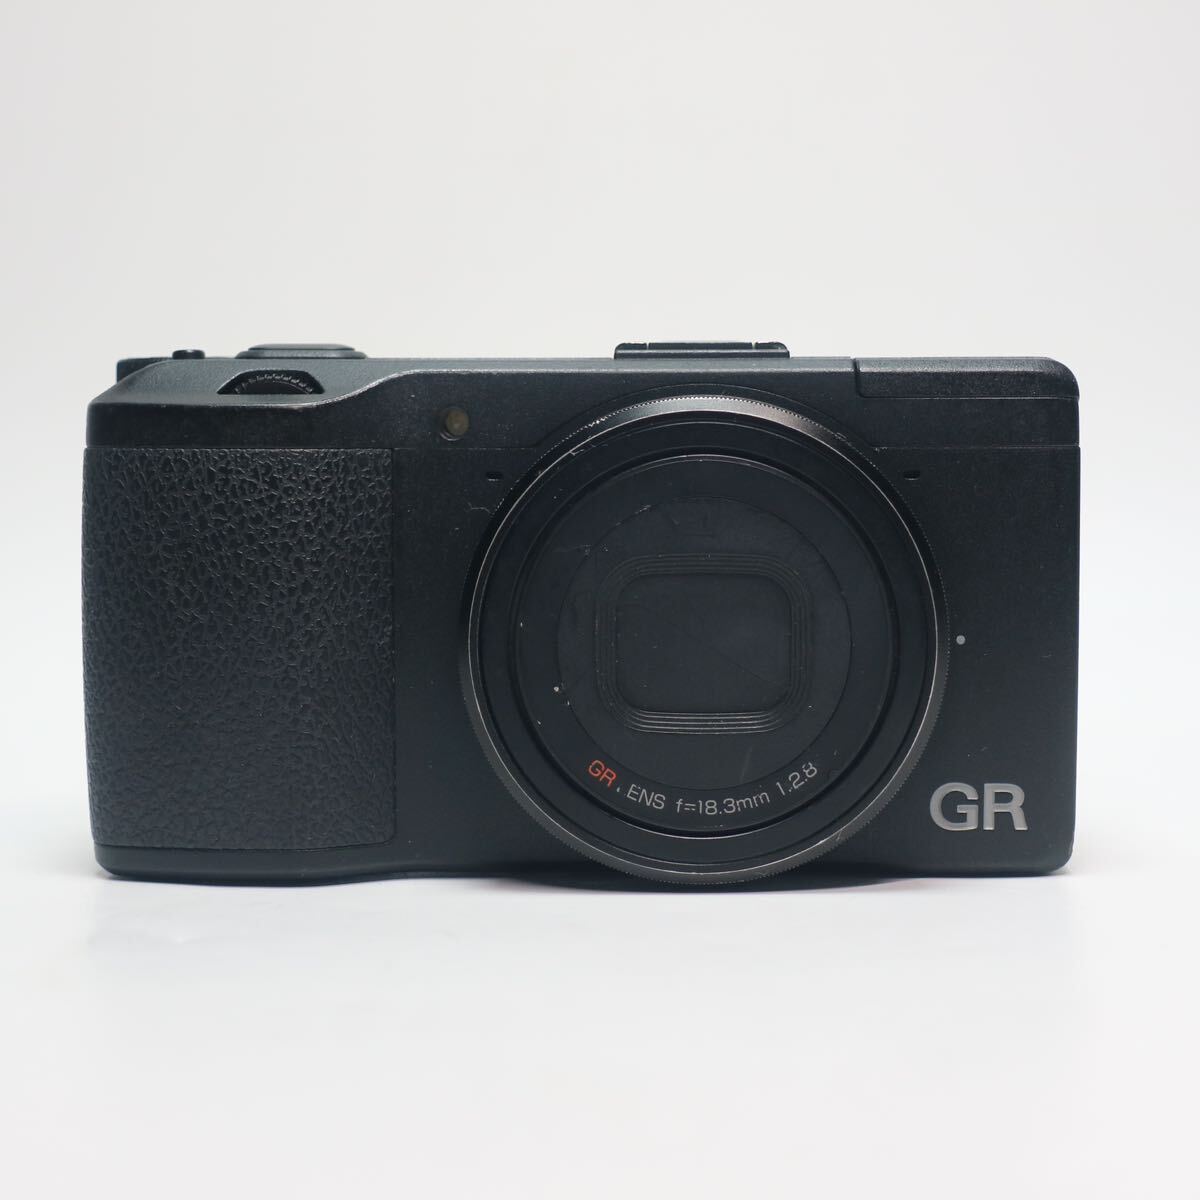 20) RICOH GR первое поколение f=18.3mm 1:2.8 Ricoh компактный цифровой фотоаппарат рабочее состояние подтверждено 